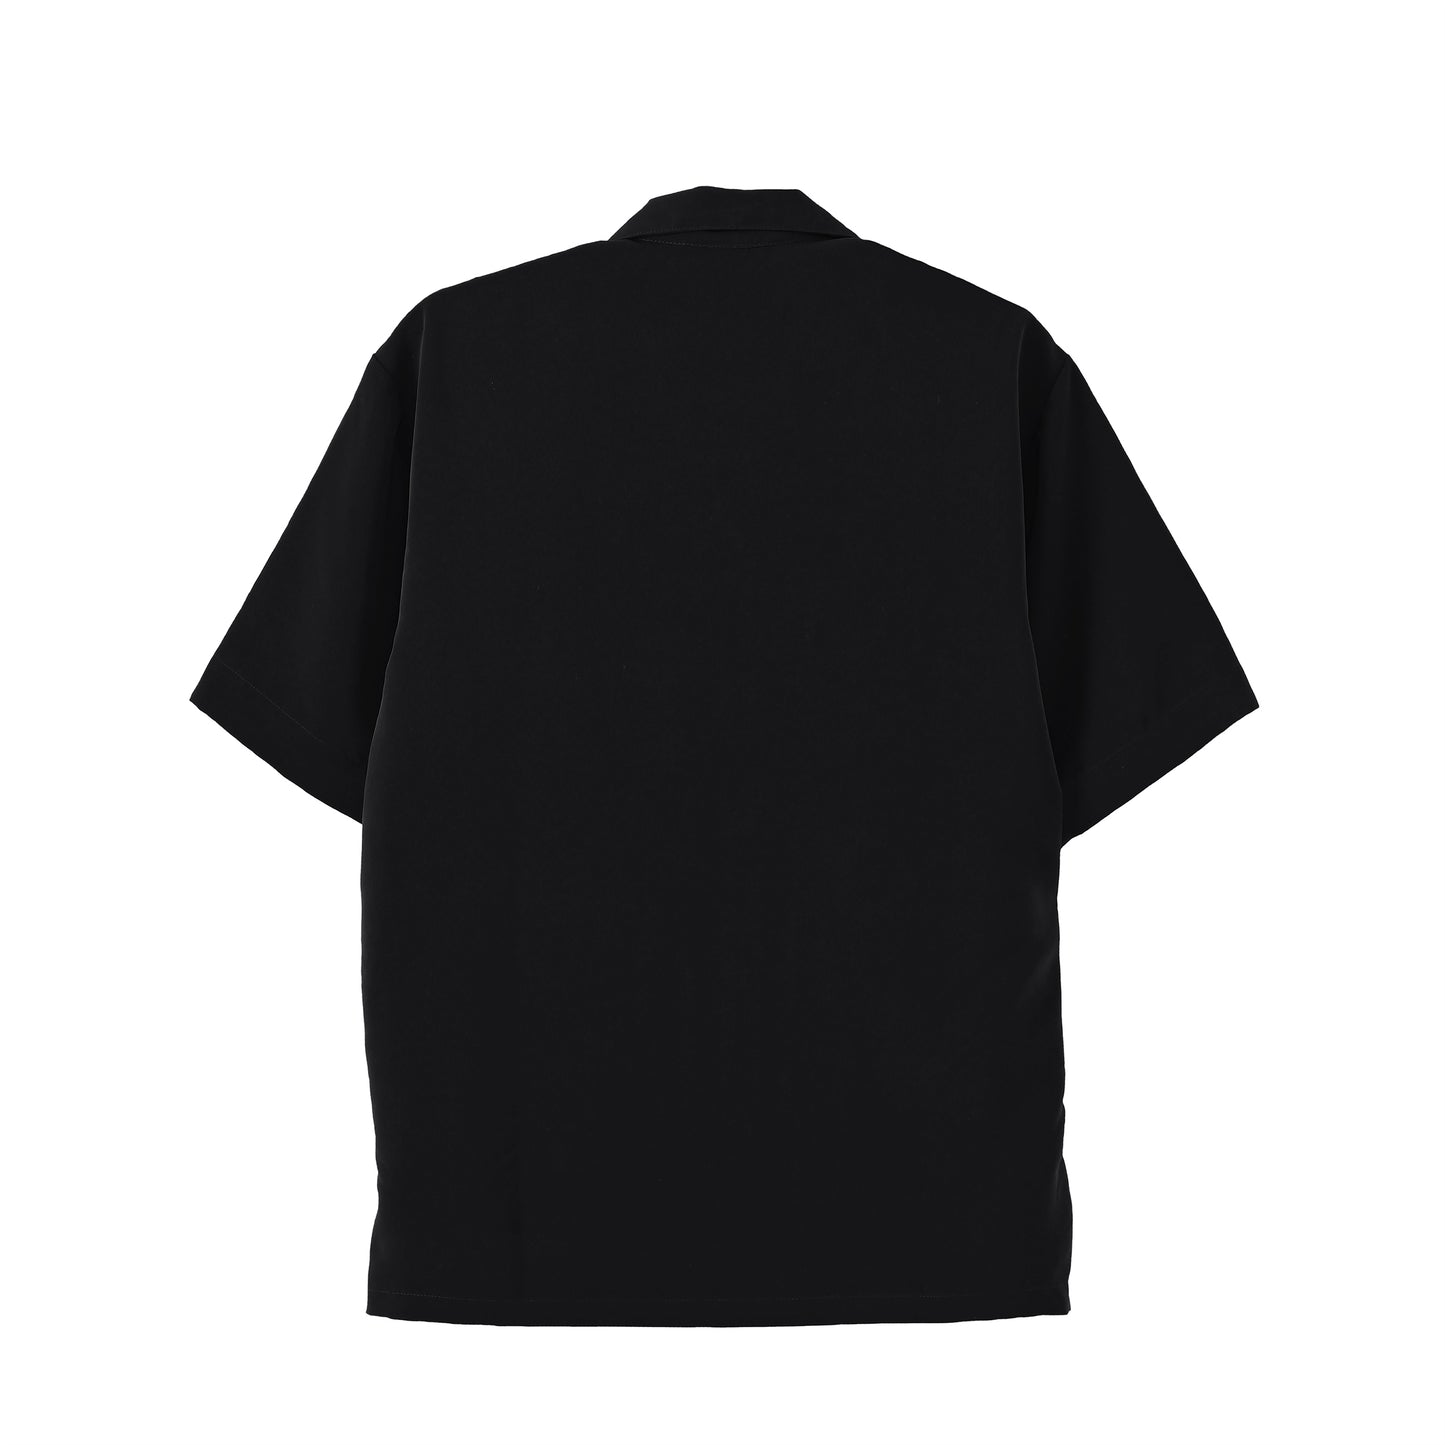 【限定生産】Premium Col. / Silky Open collar shirt